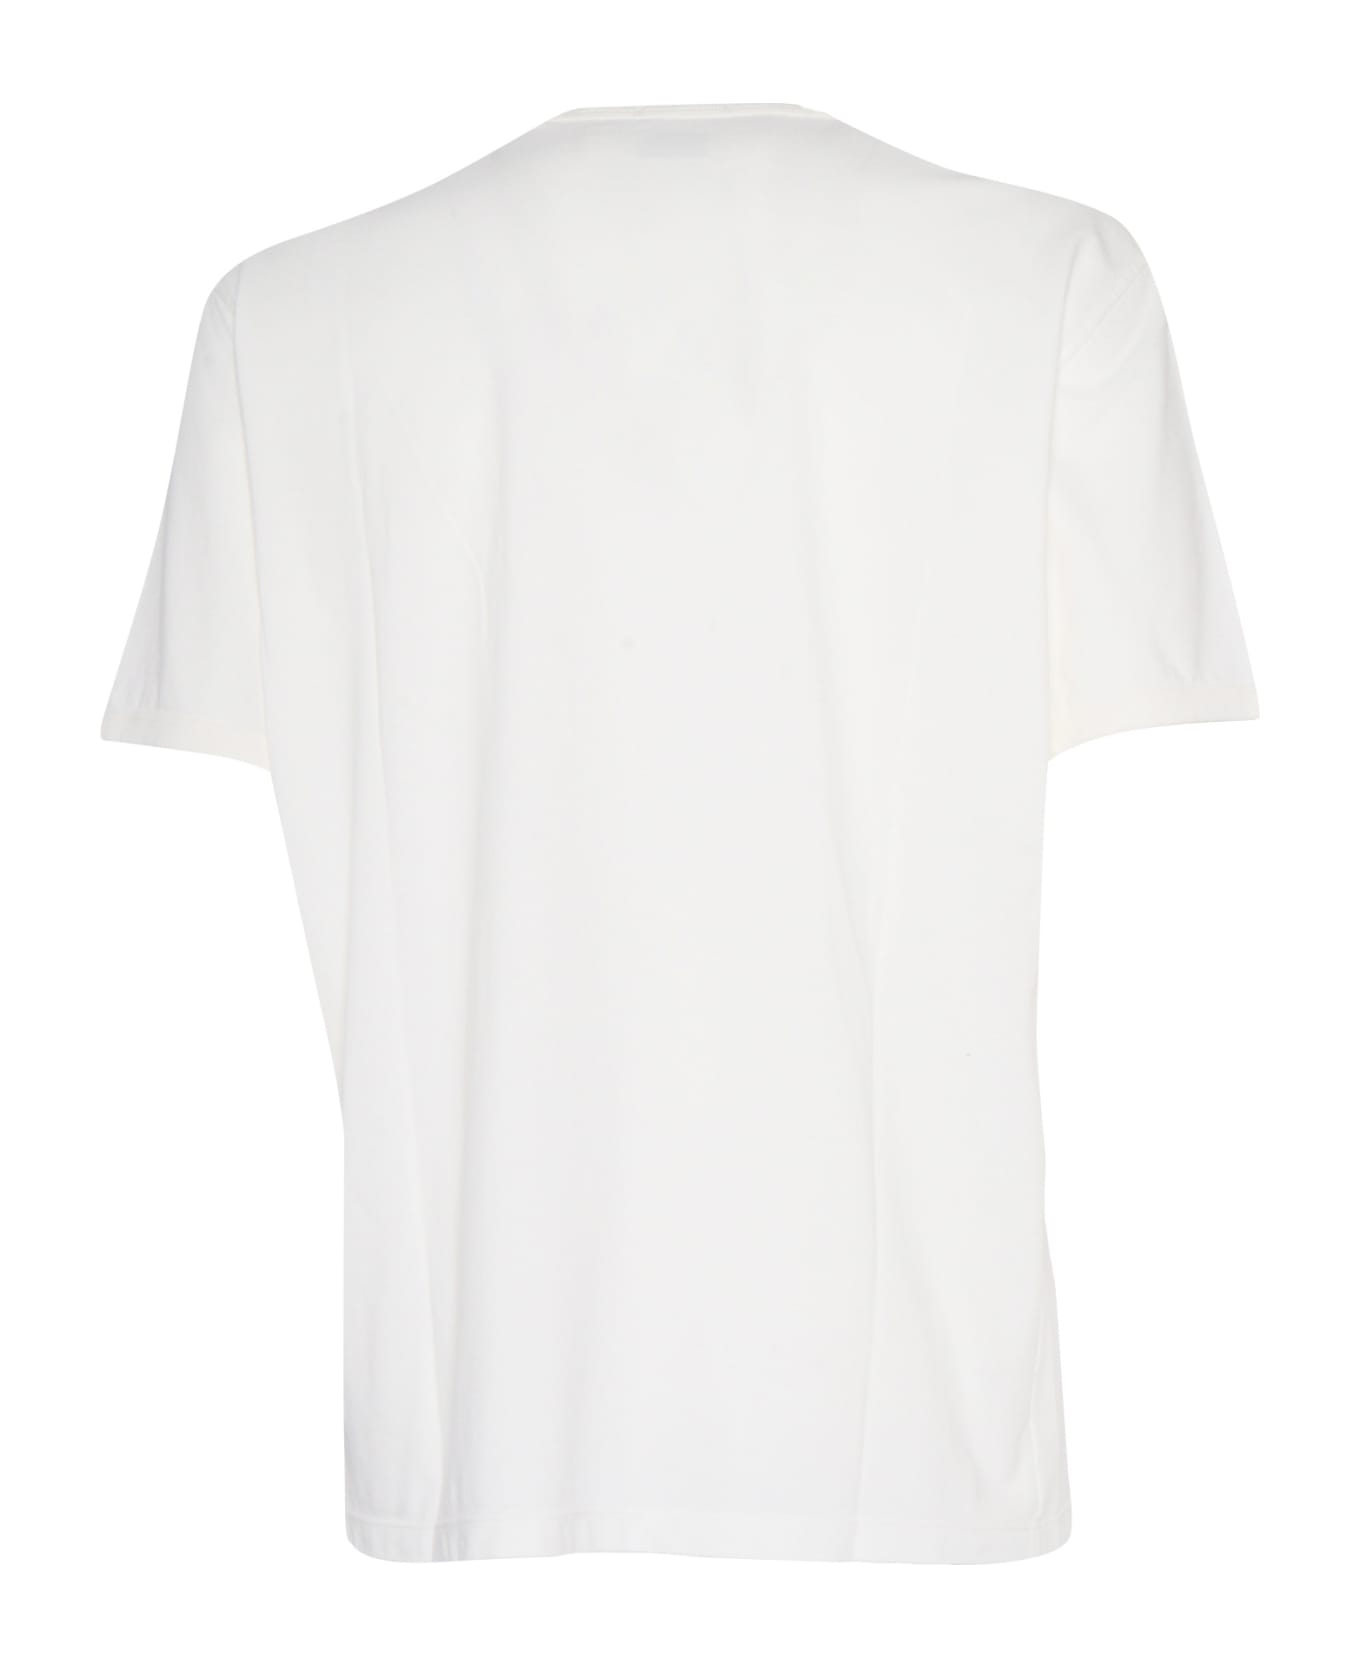 C.P. Company White T-shirt - WHITE シャツ